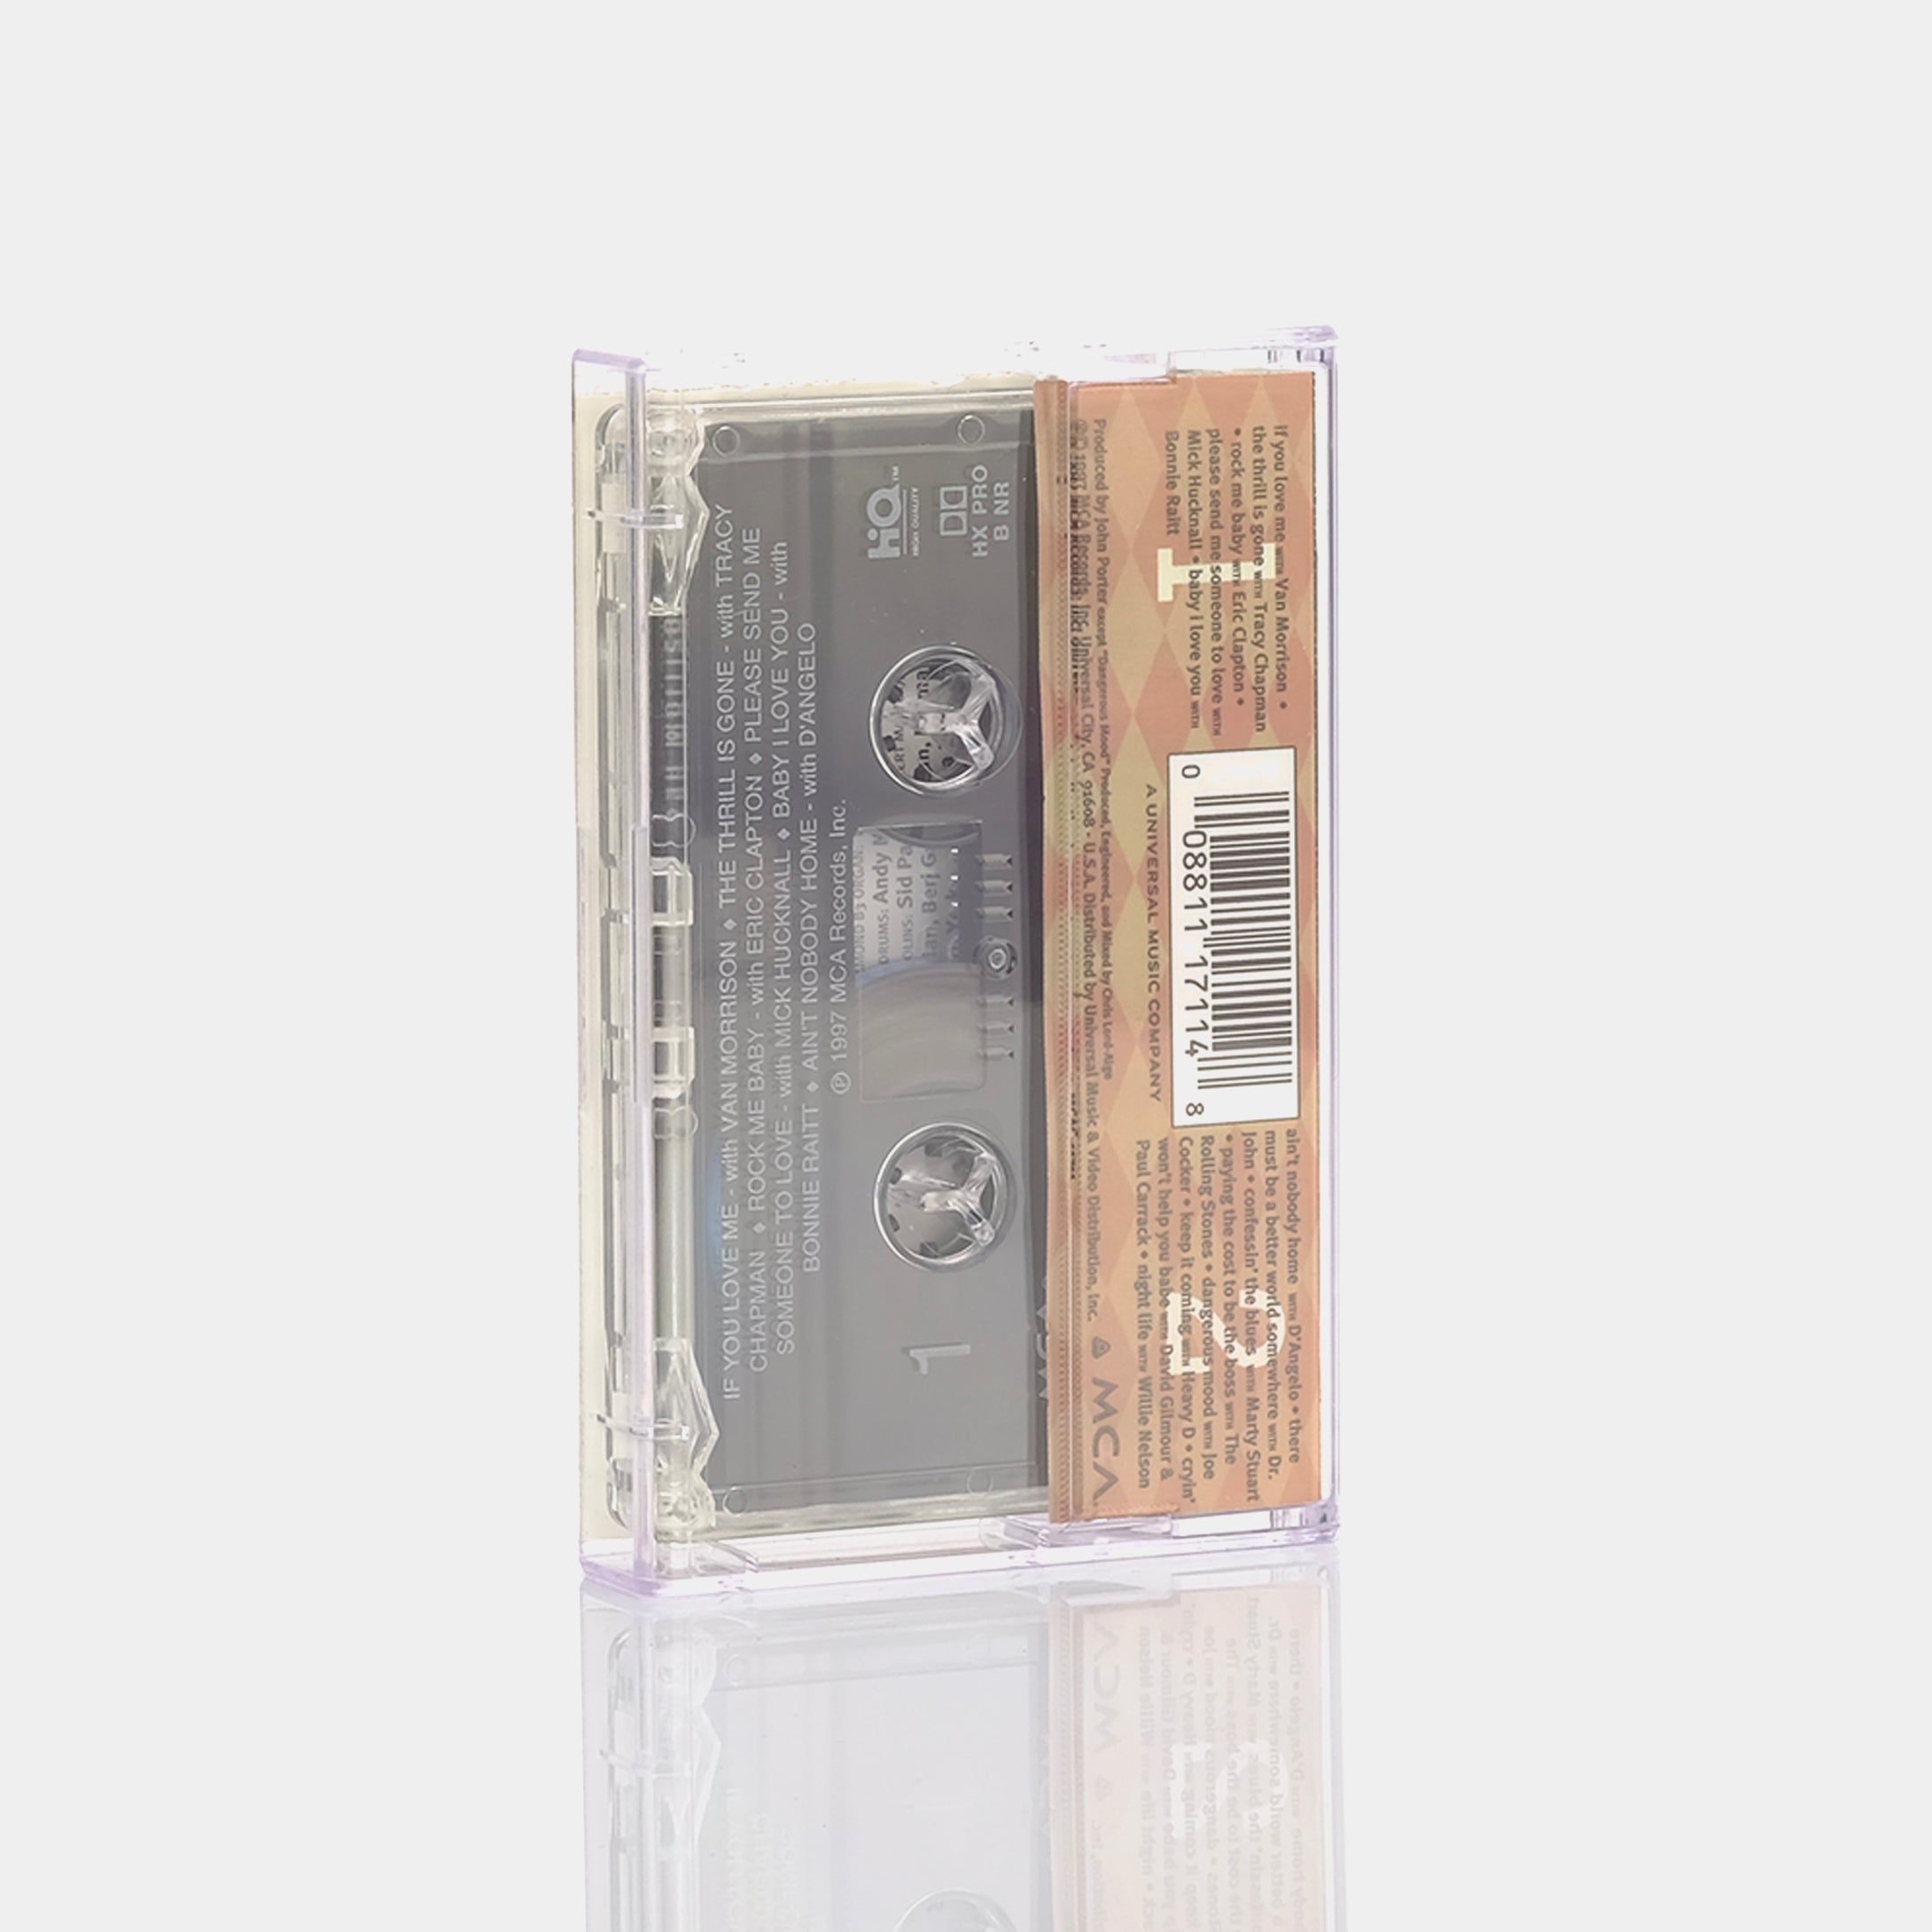 B.B. King - Deuces Wild Cassette Tape